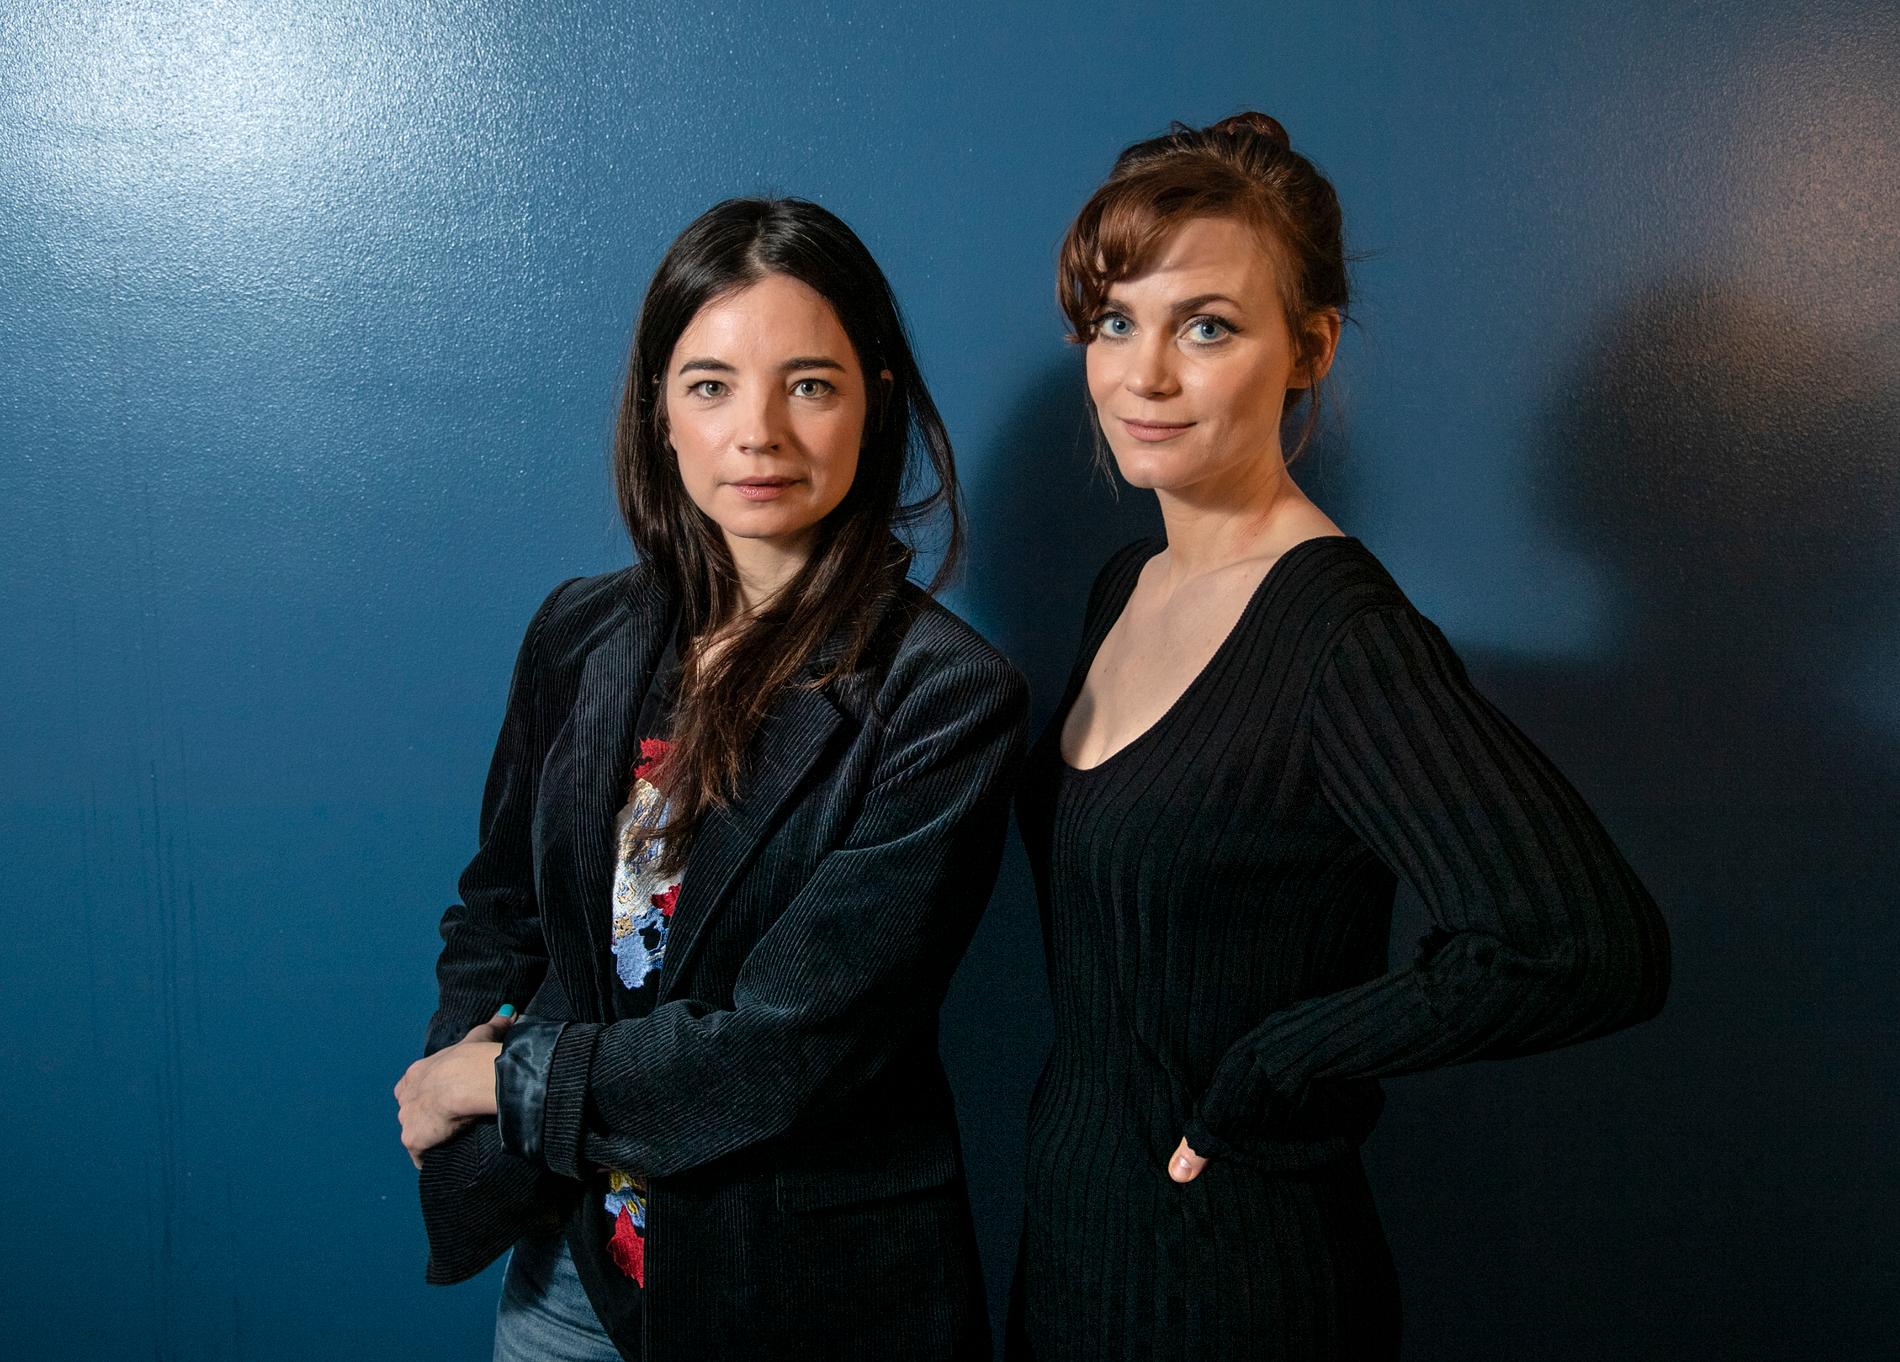 Louise Peterhoff och Liv Mjönes spelar två av de bärande rollerna i "Tsunami", en serie som utspelas med tsunamikatastrofen som fond.